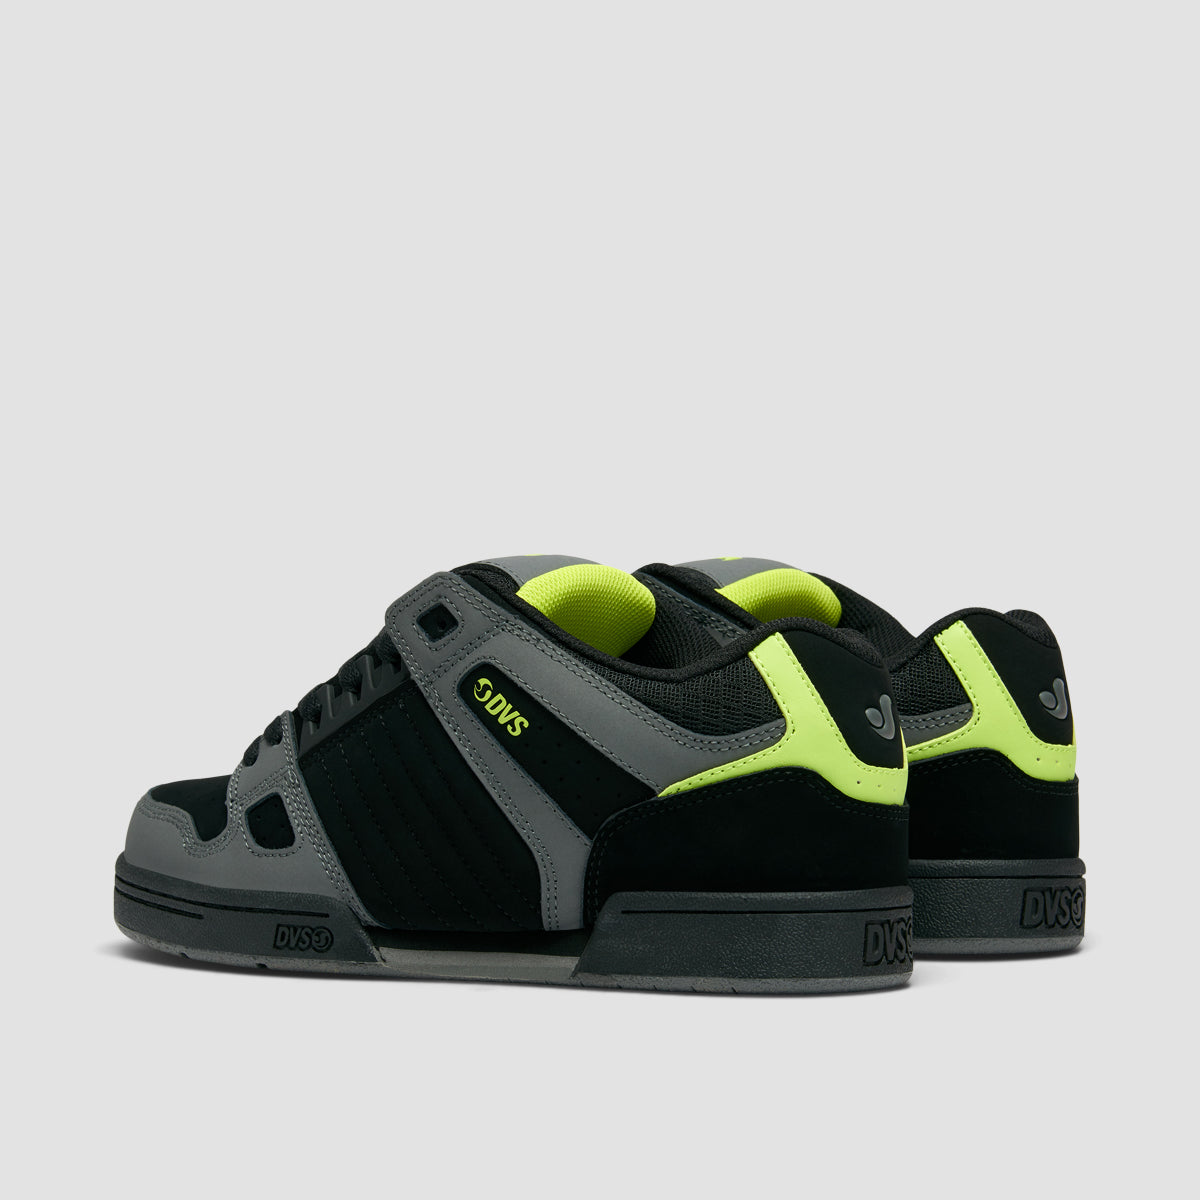 DVS Celsius Shoes - Black/Charcoal/Lime Nubuck